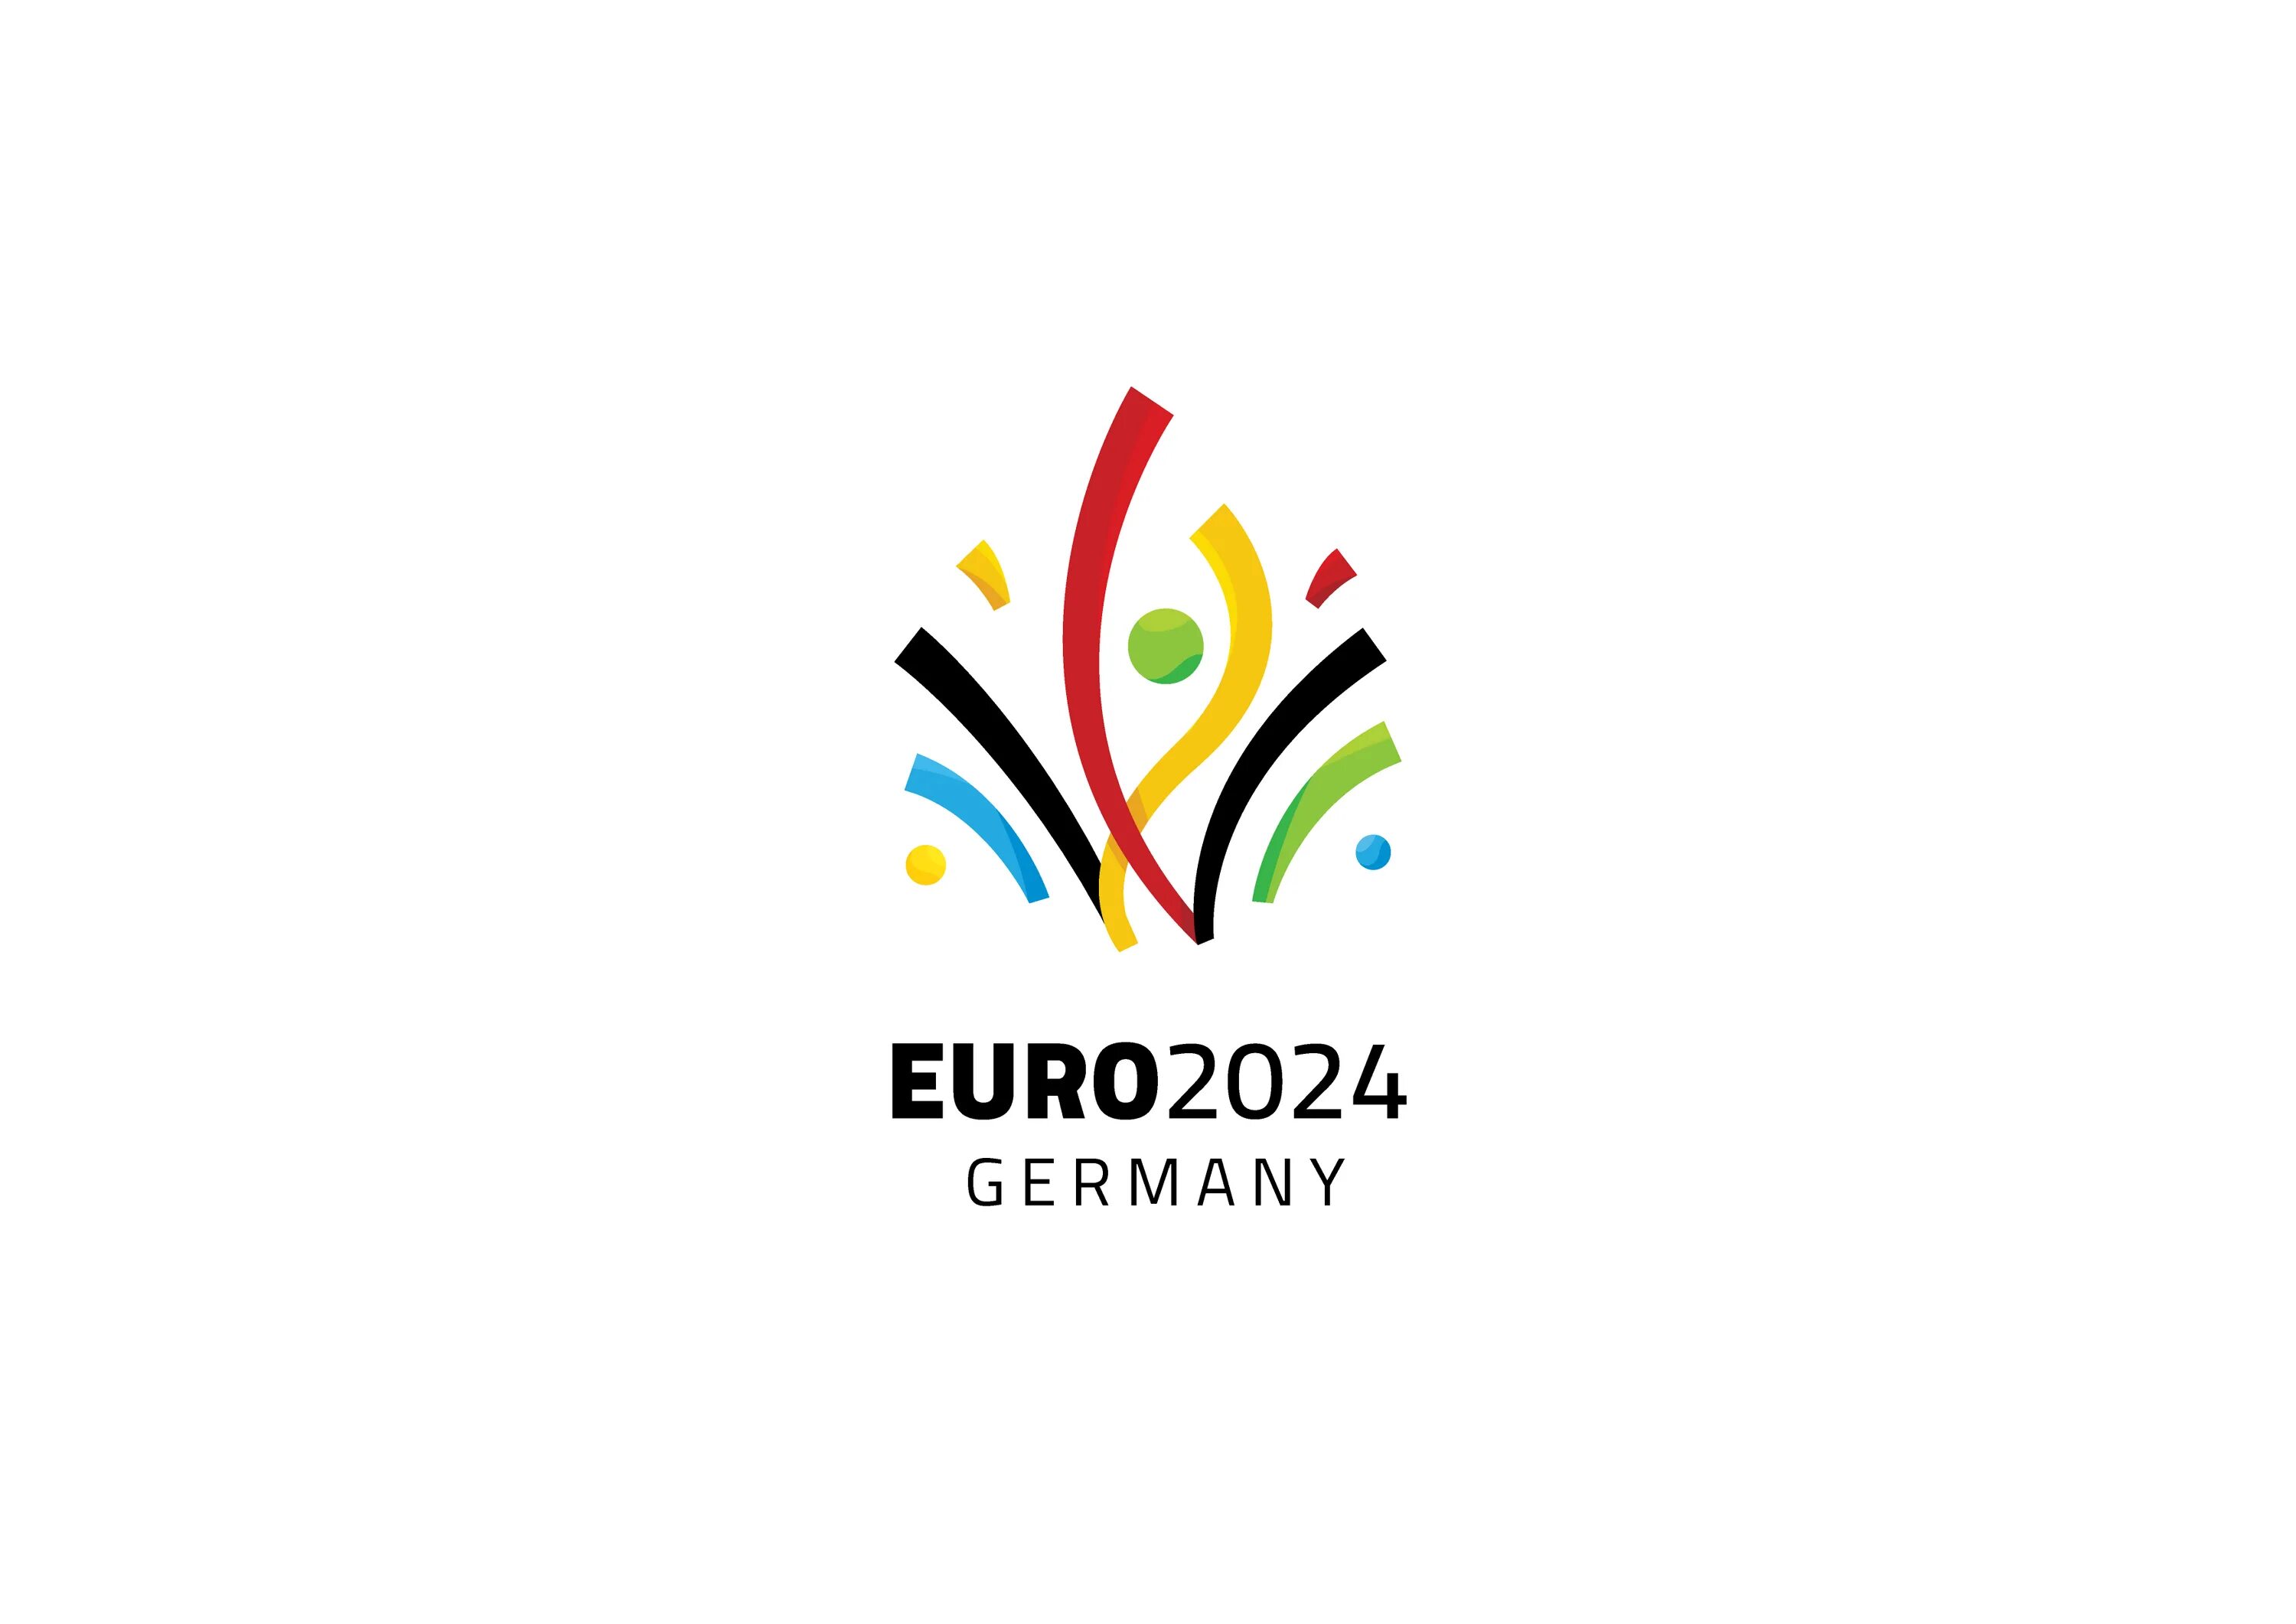 Парк лого 2024. UEFA Euro 2024. Euro 2024 Germany. Euro 2024 logo. Евро 2024 ло́готип.